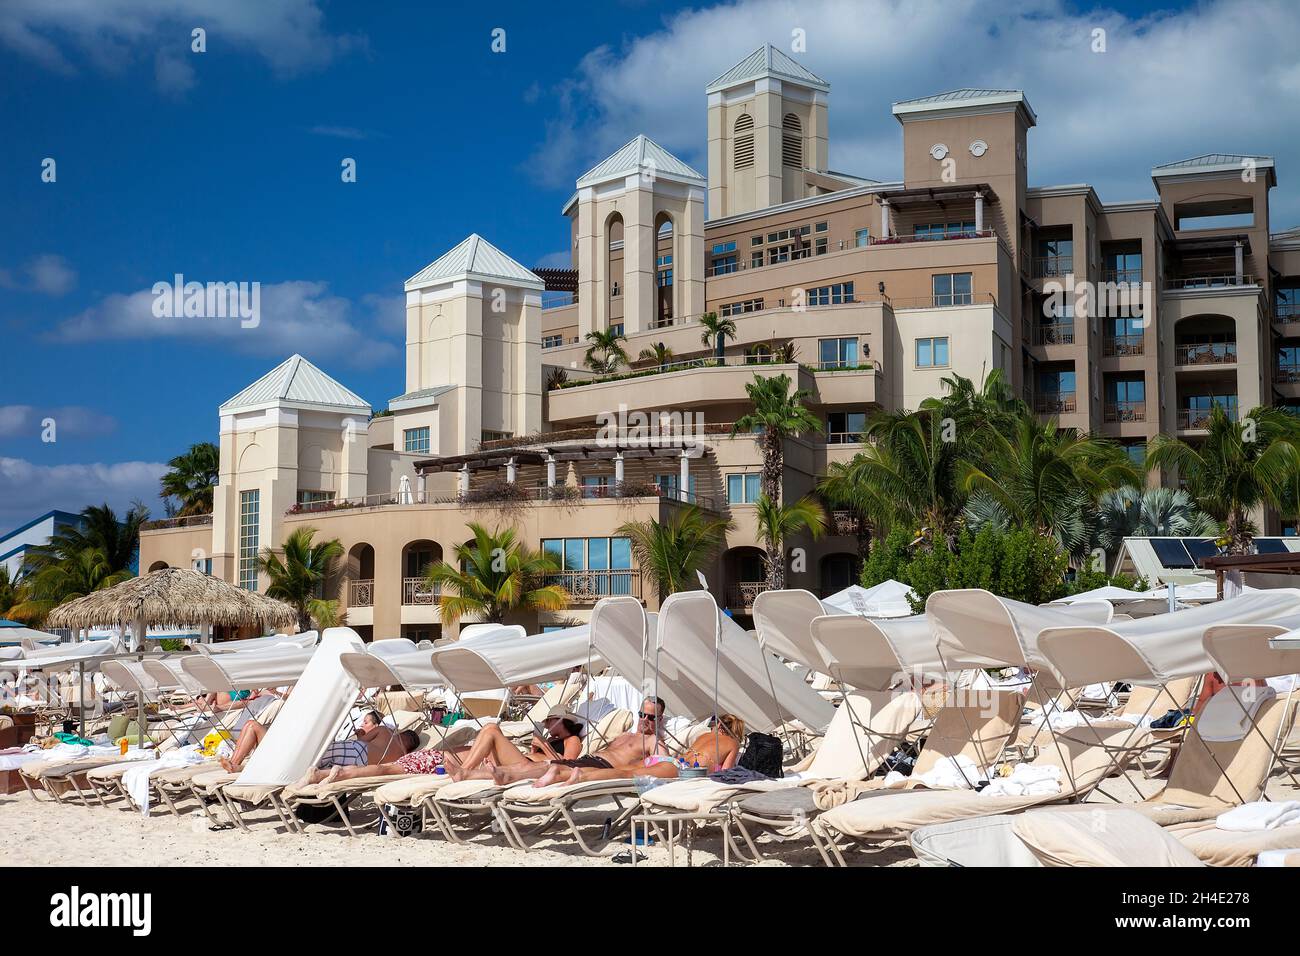 Grand Cayman, Cayman Islands - 8. März 2013: Gäste des Luxushotels entspannen sich auf Liegestühlen am Strand von Grand Cayman, Cayman Islands. Stockfoto